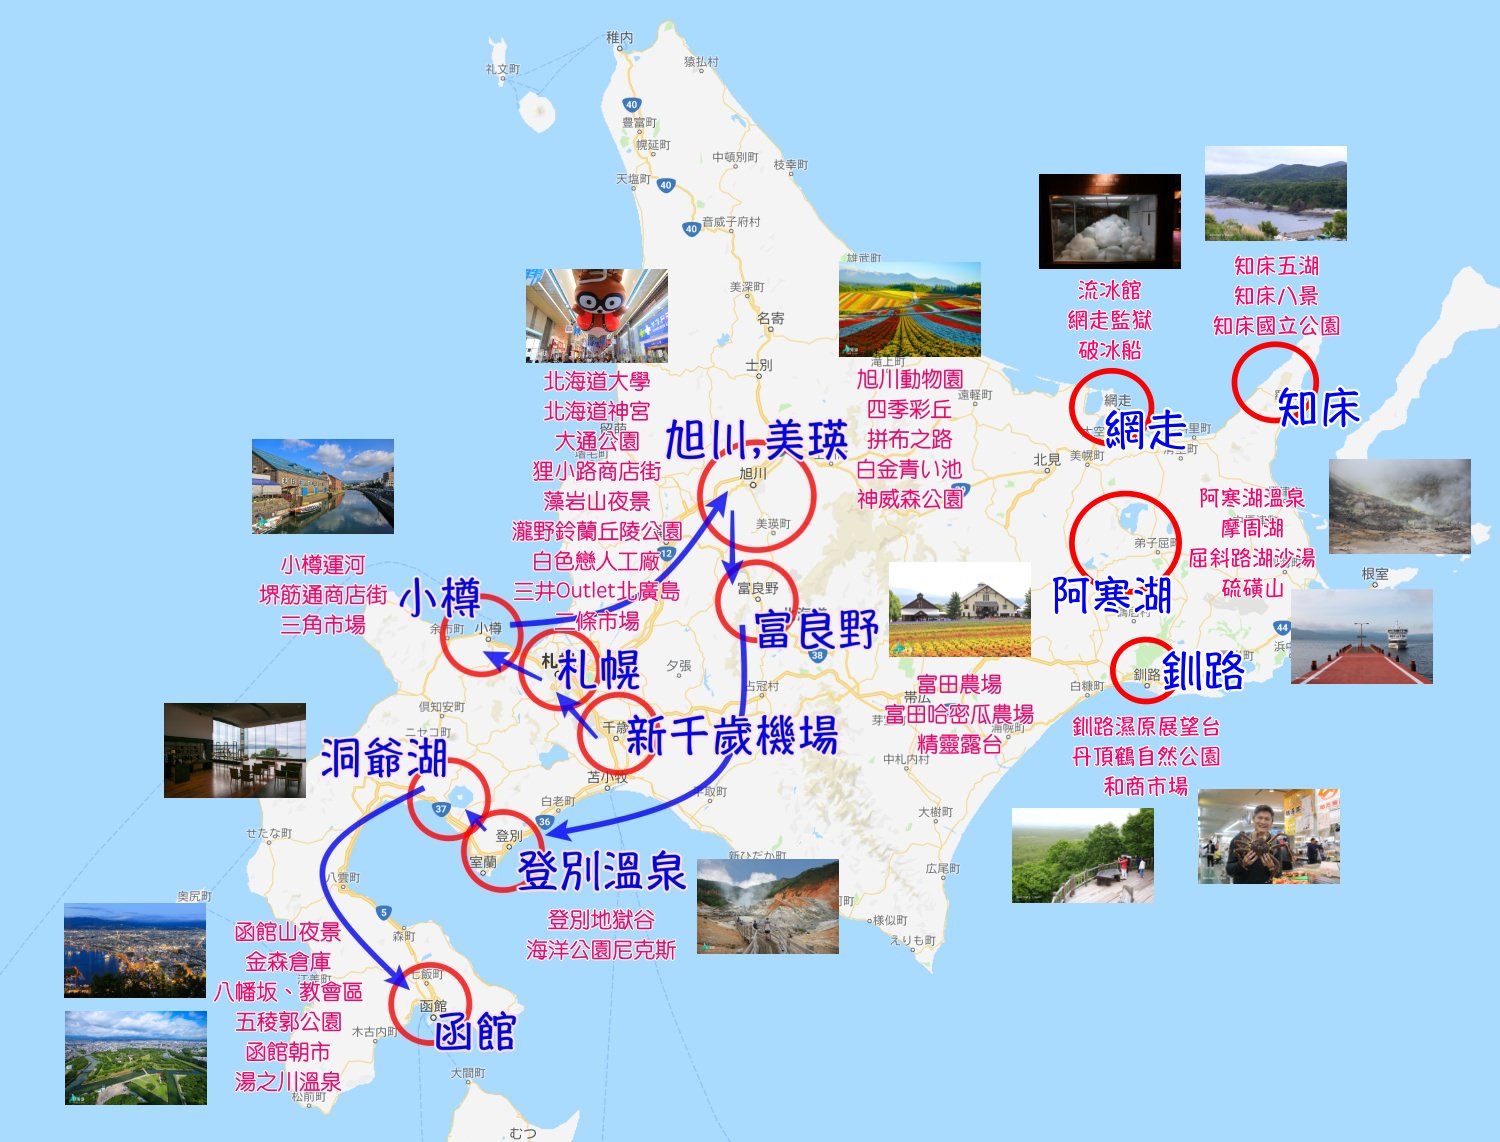 北海道景點推薦 40 北海道自由行好玩景點 札幌 小樽 美瑛 函館 道東景點這樣玩 Mimi韓の旅遊生活